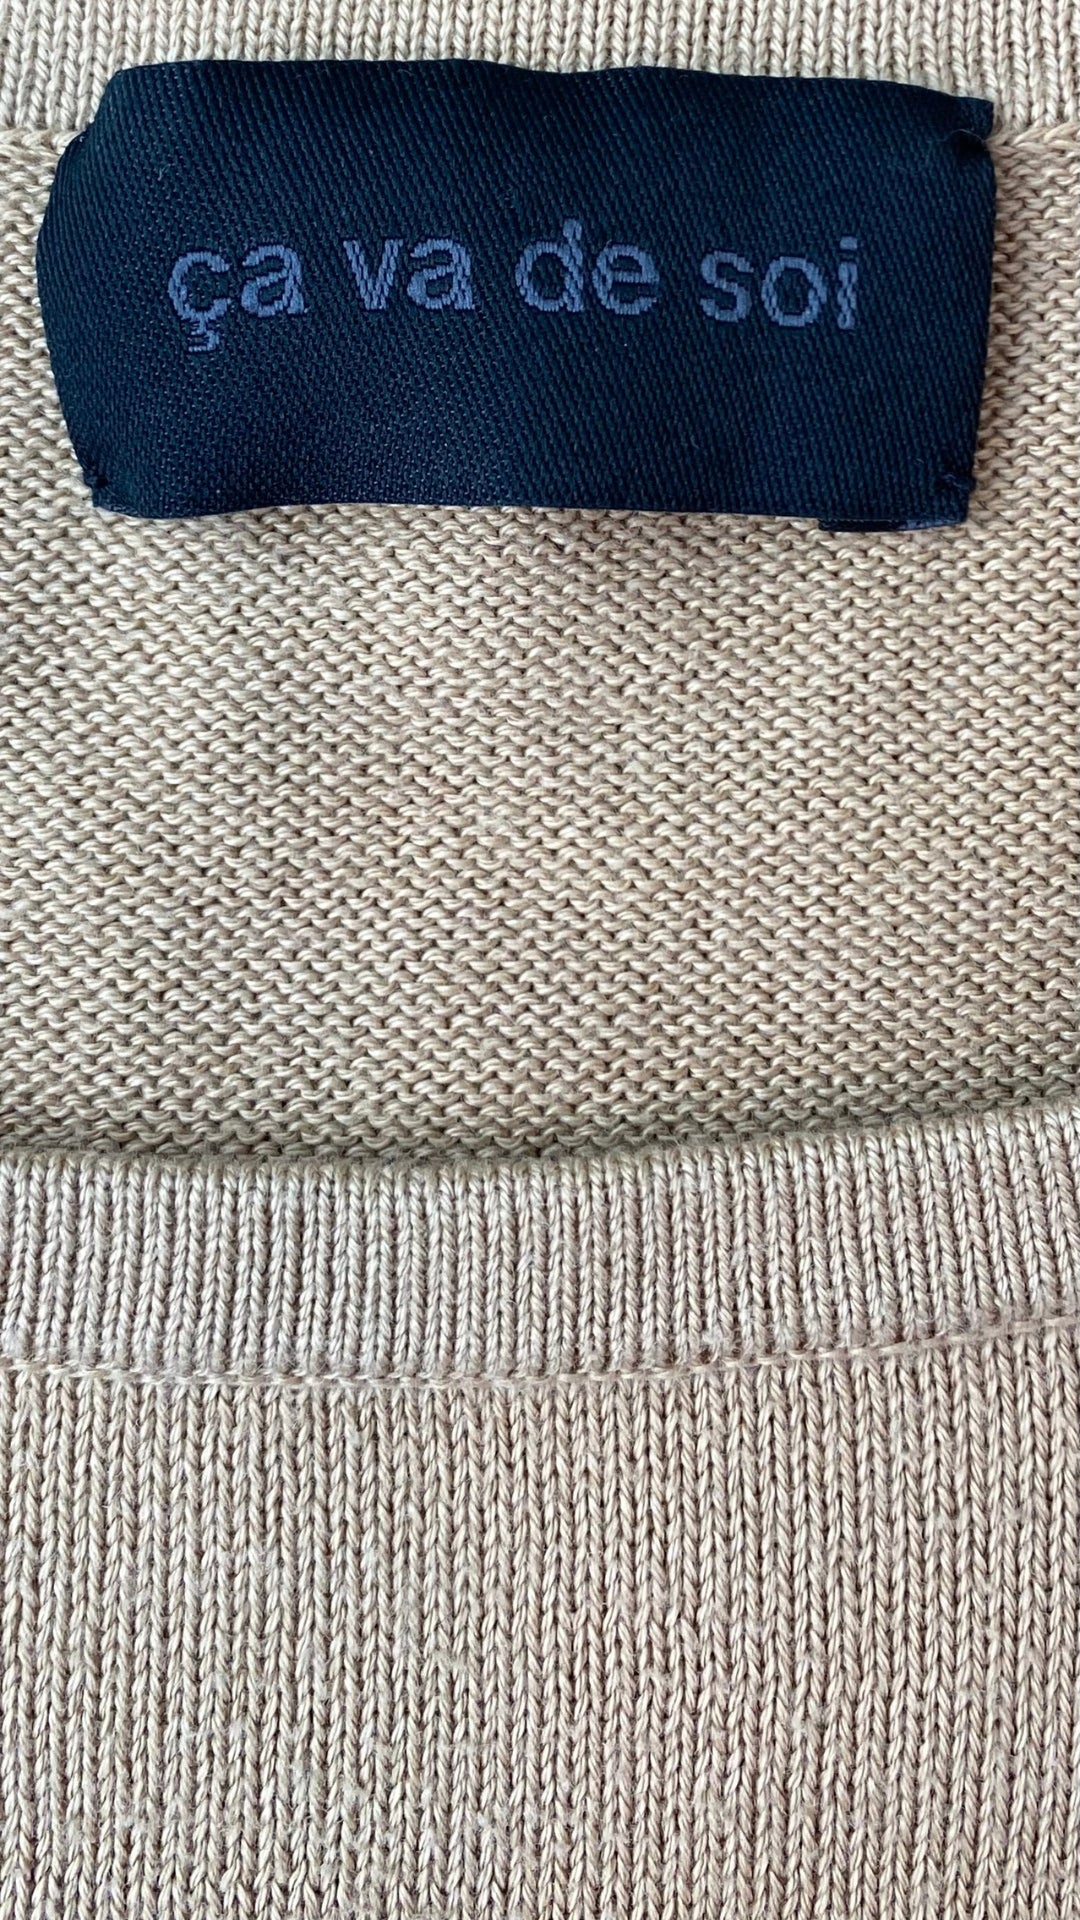 Chandail long tricot coton egyptien Ca va de soi, taille xs/s. Vue de l'étiquette de marque.